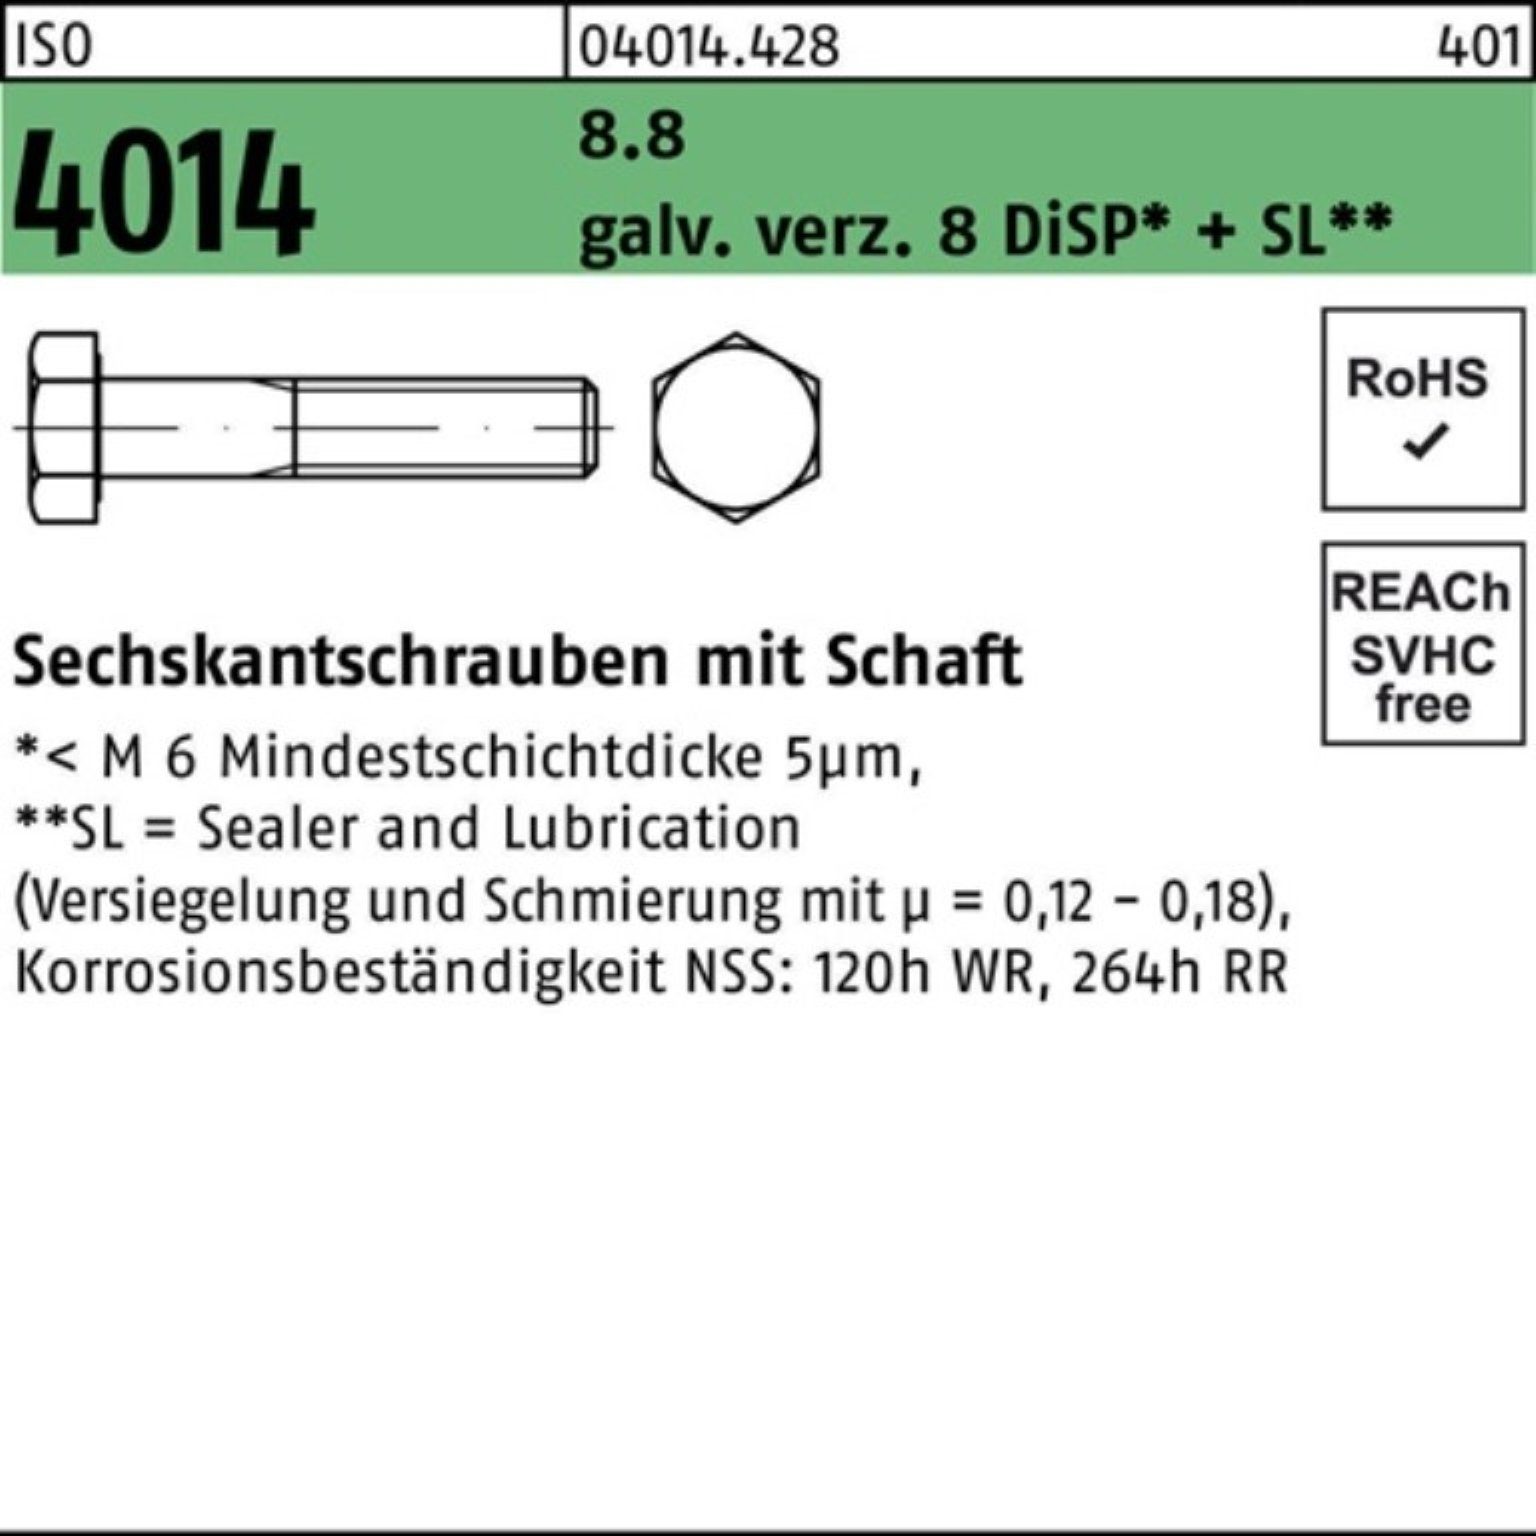 Bufab Sechskantschraube 100er Pack Sechskantschraube ISO 4014 Schaft M20x170 8.8 galv.verz. 8